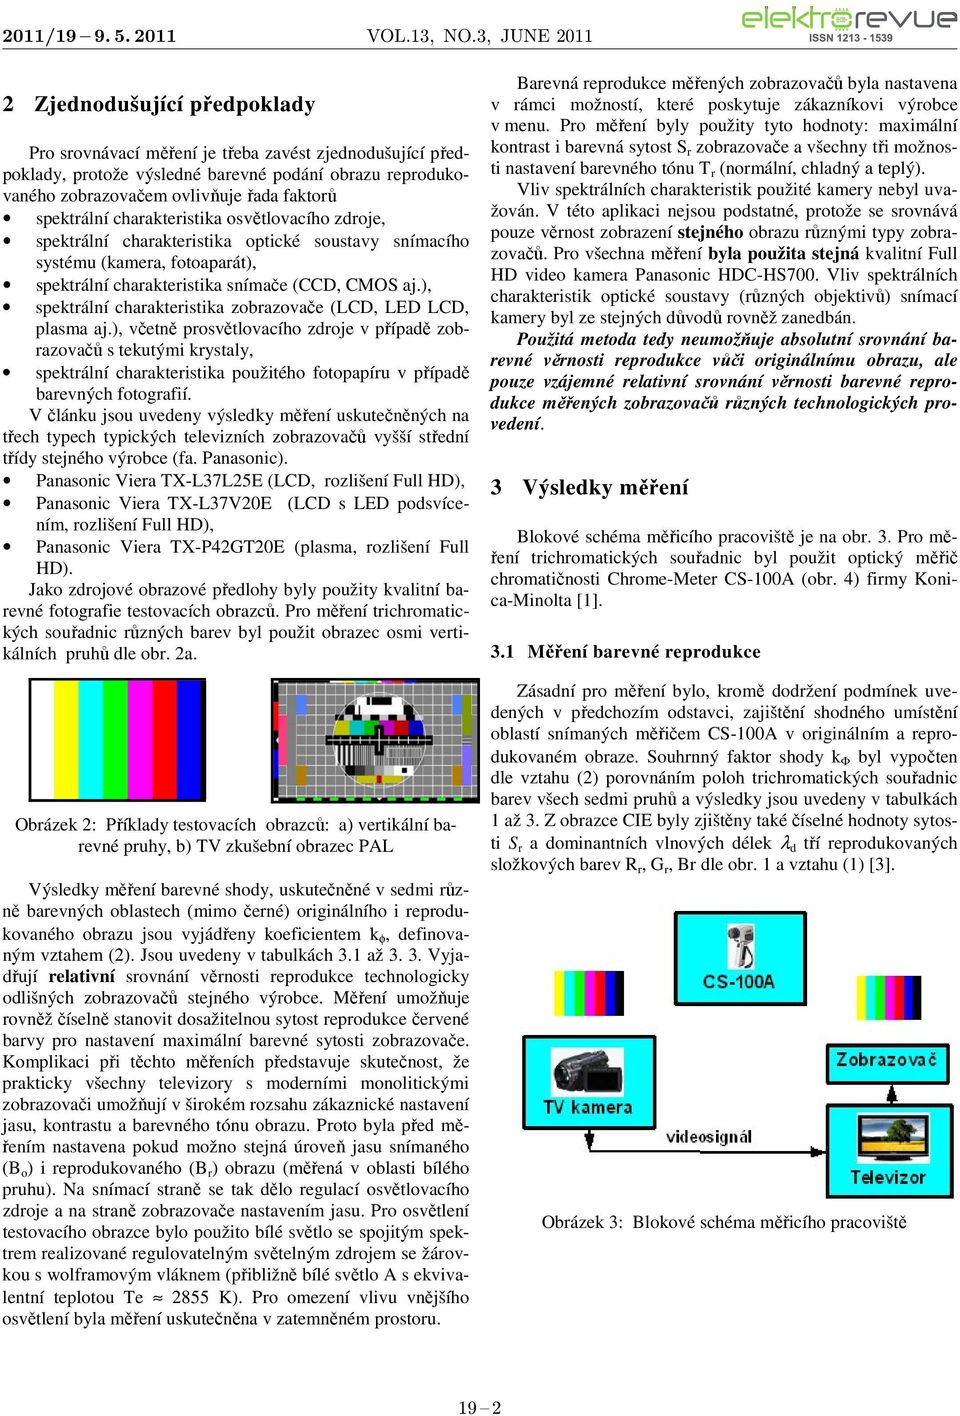 ), spektrálí charakteristika zobrazovače (LCD, LED LCD, plasma aj.